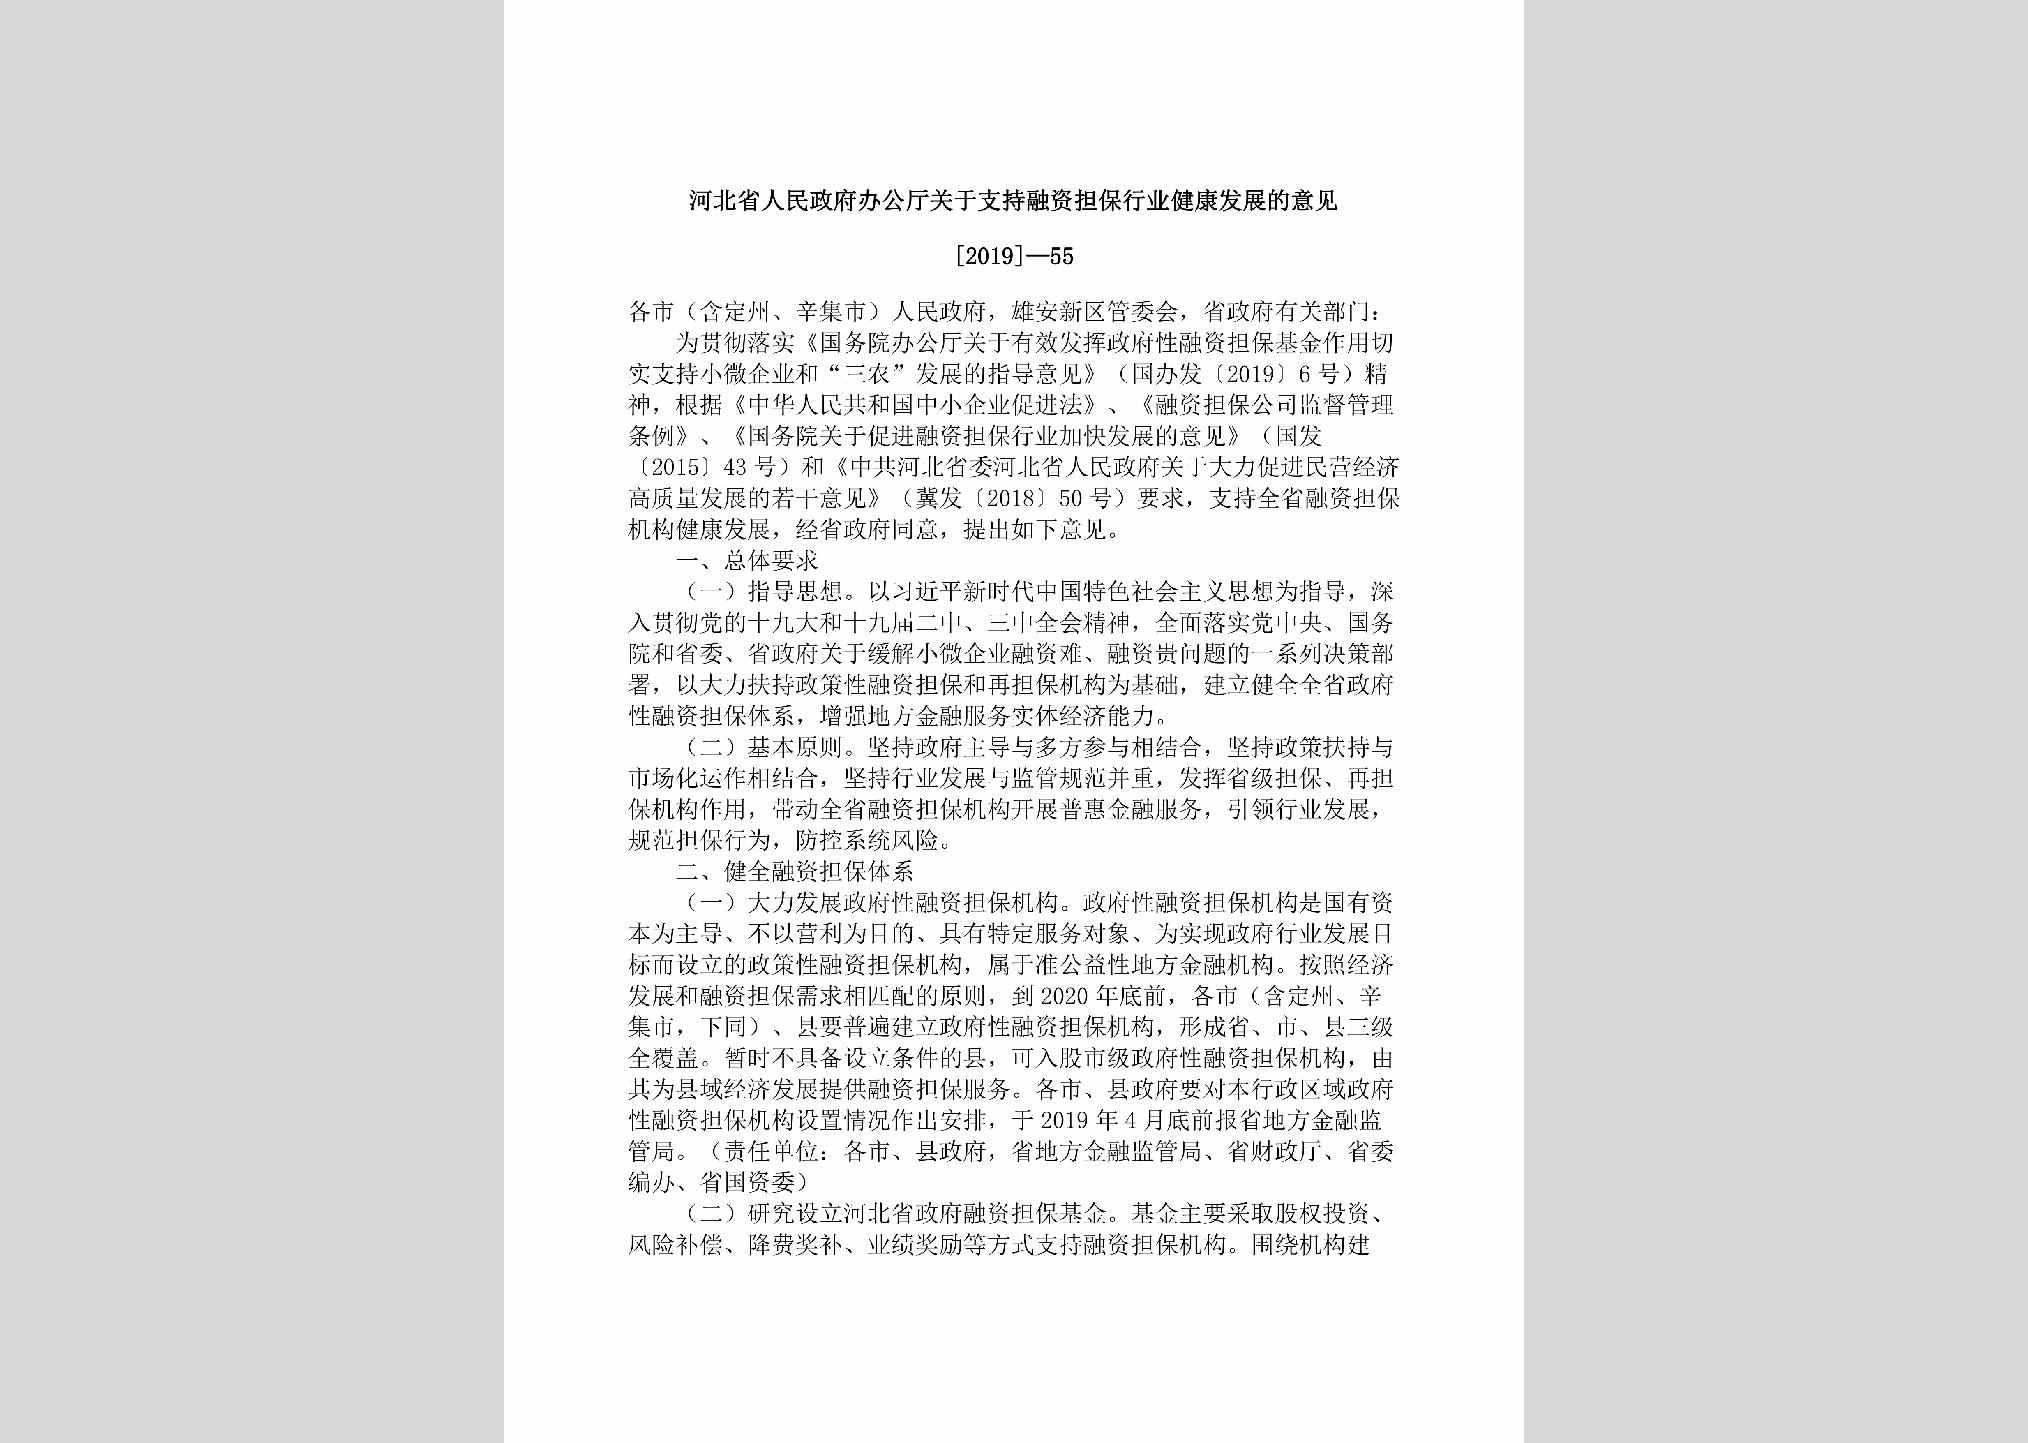 [2019]-55：河北省人民政府办公厅关于支持融资担保行业健康发展的意见